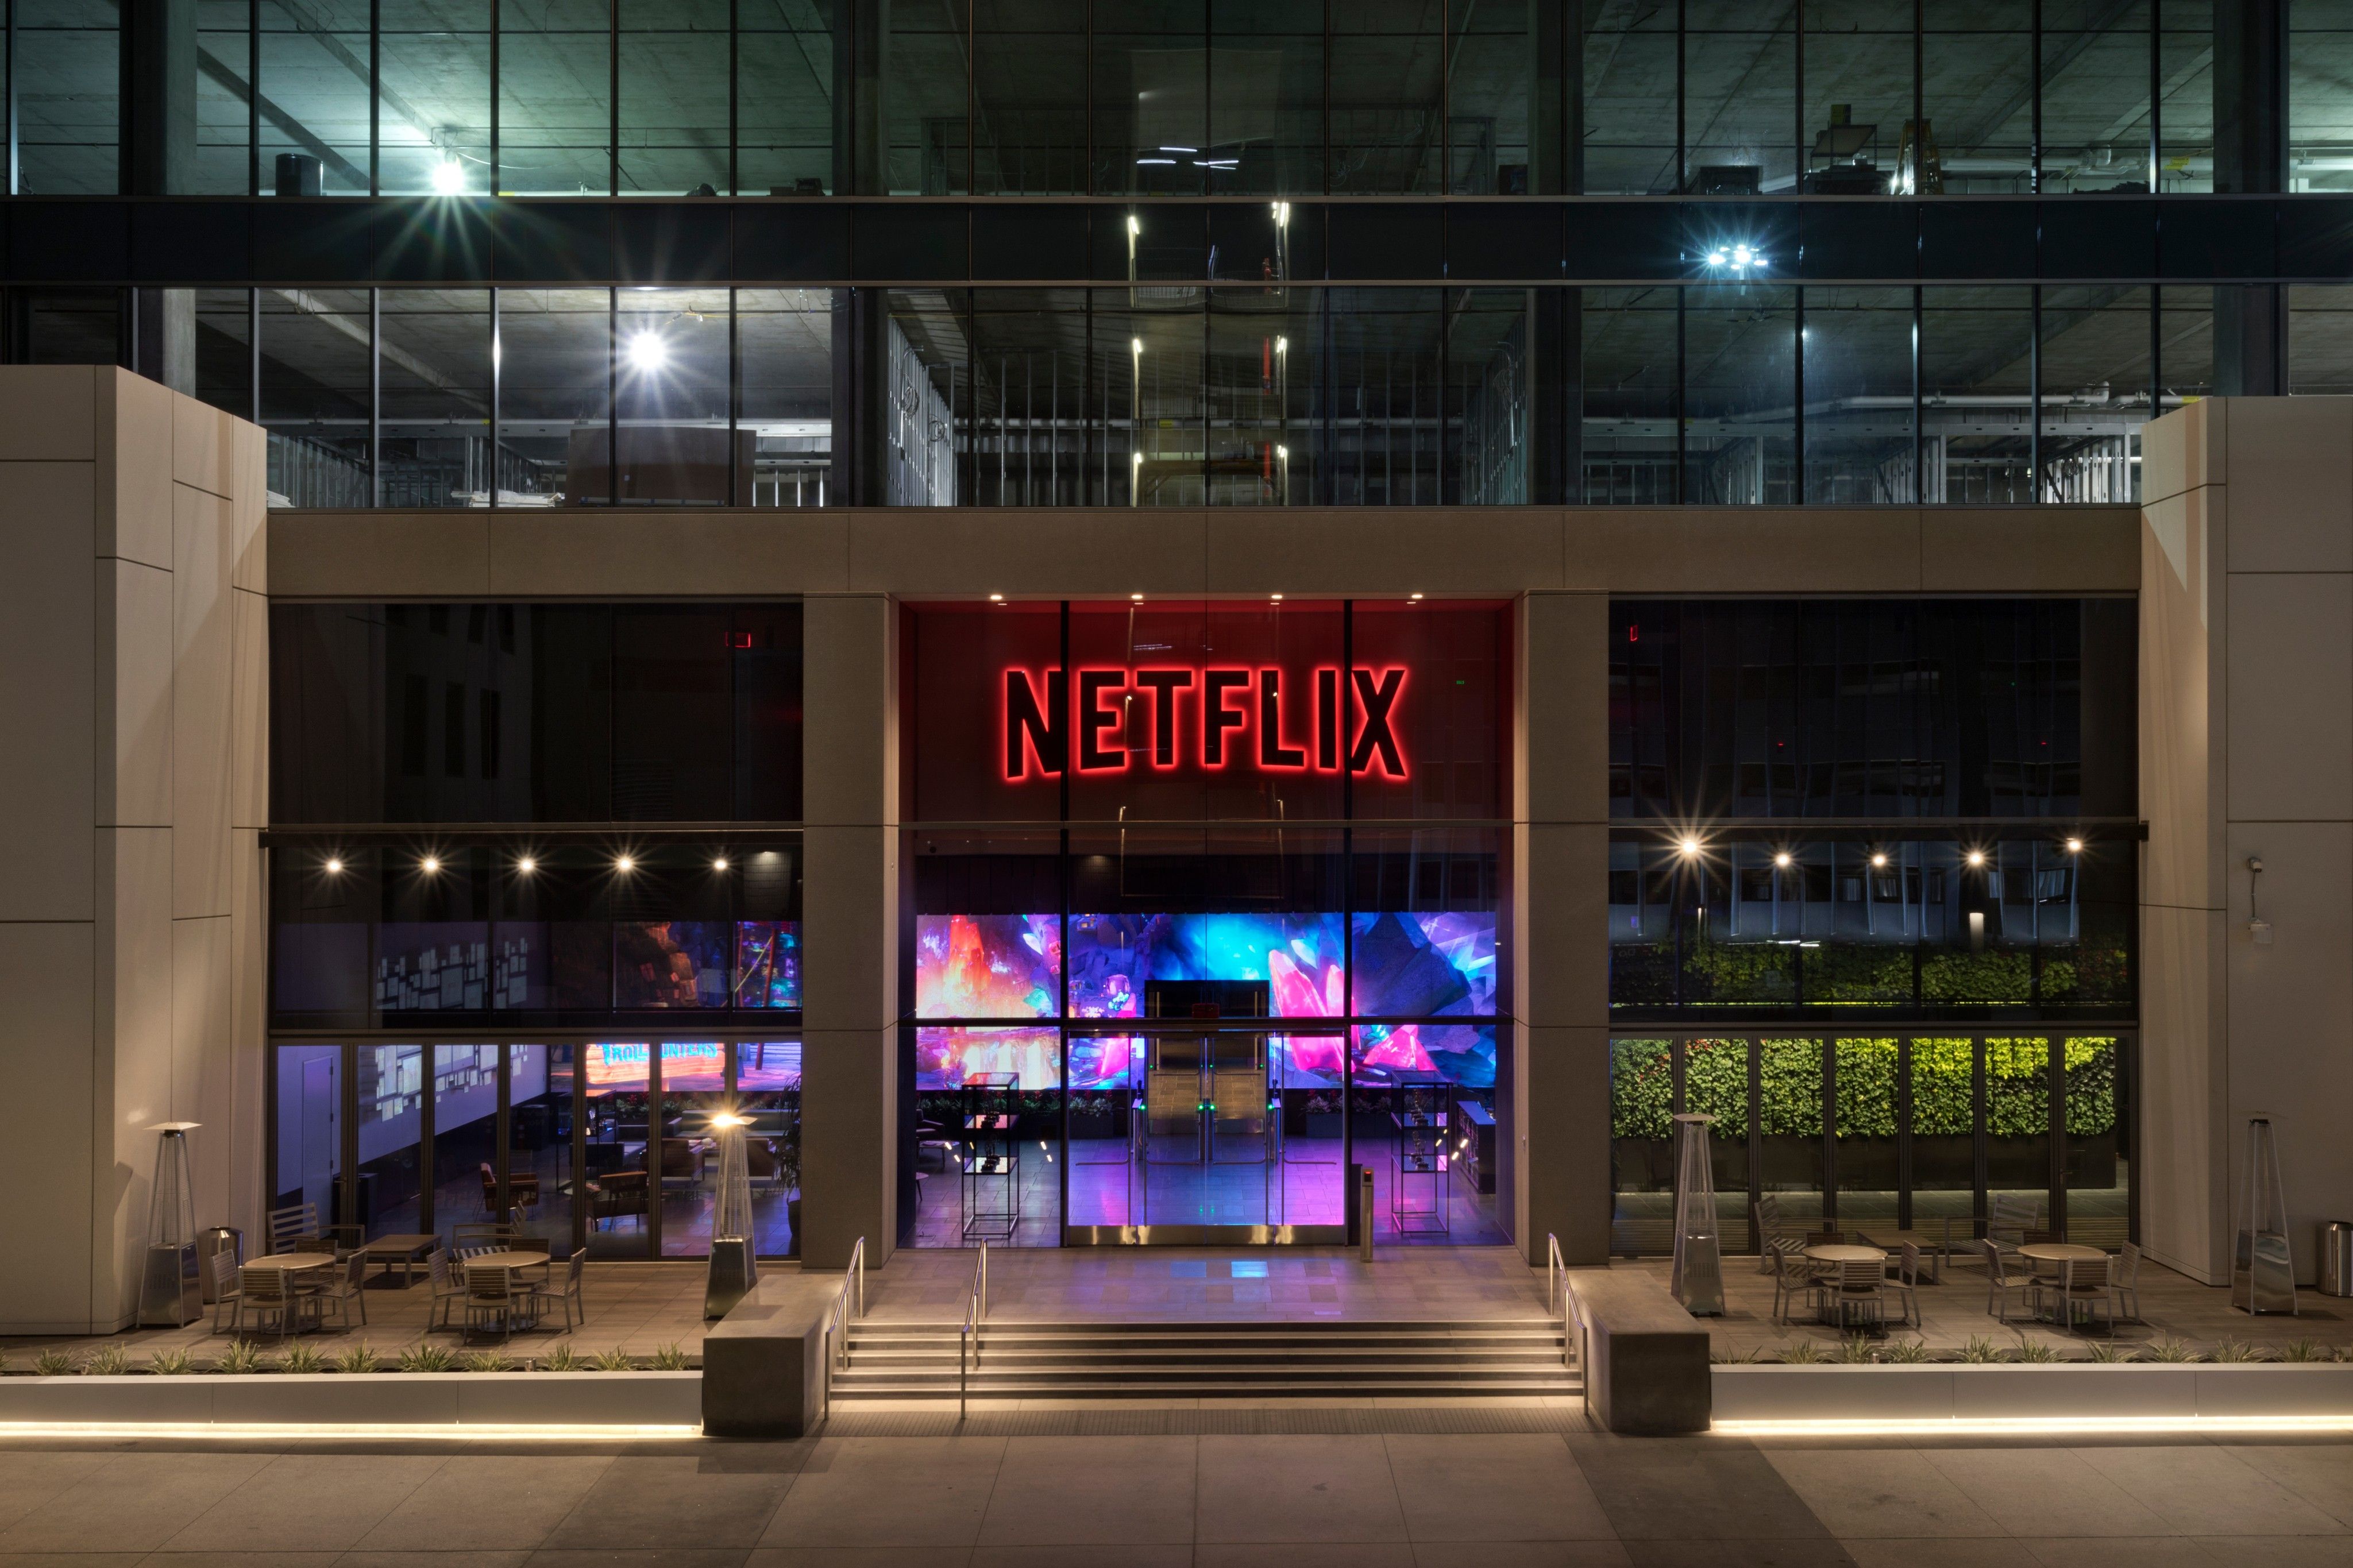 Netflix se asocia con Microsoft para su plan de suscripción con publicidad